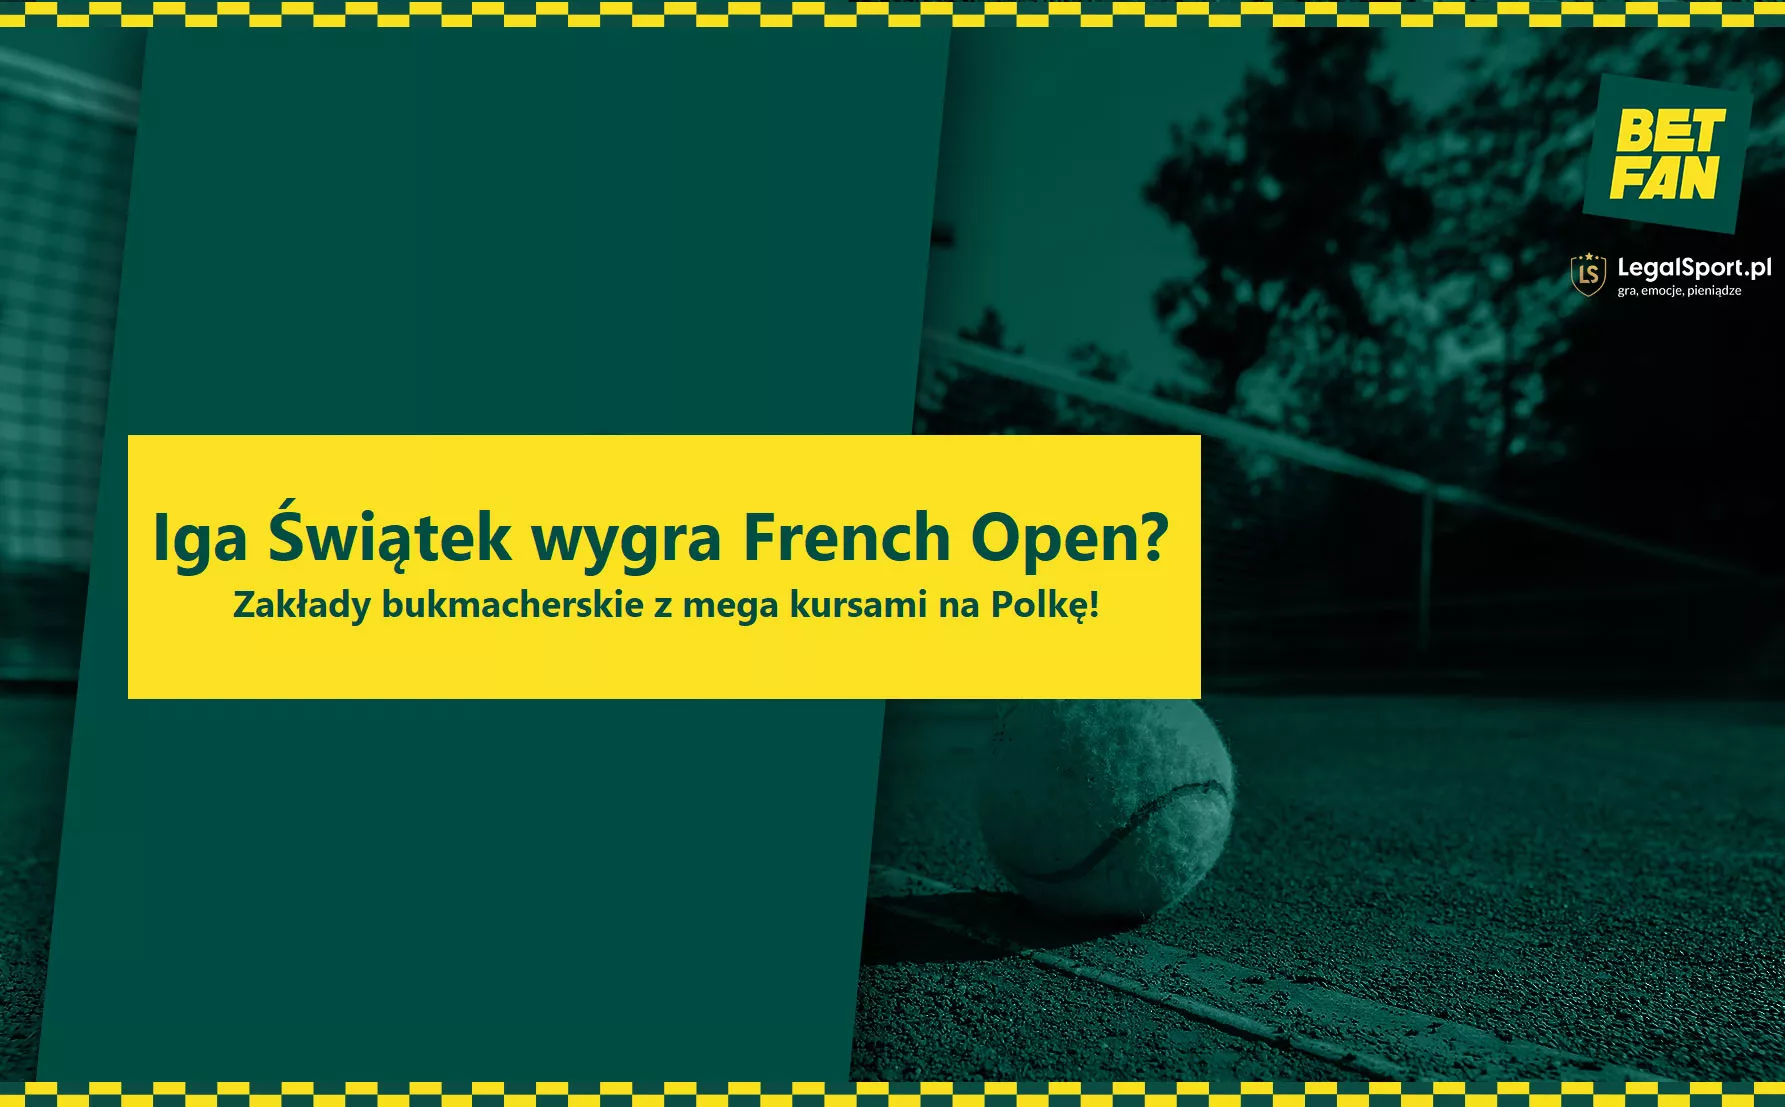 Iga Świątek wygra French Open?